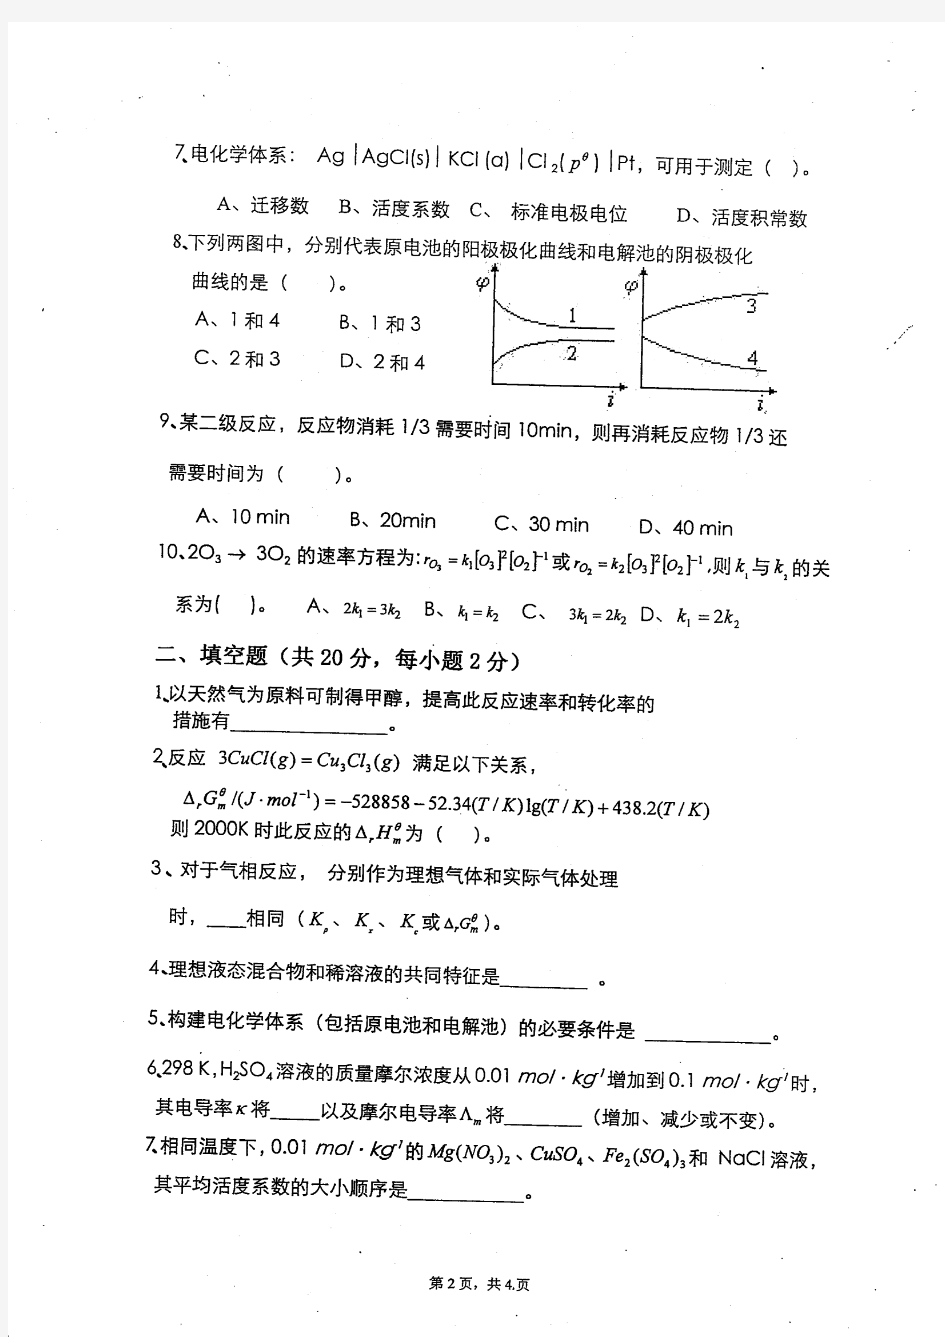 2012年重庆大学硕士研究生物理化学(含物理化学实验)入学考试考试